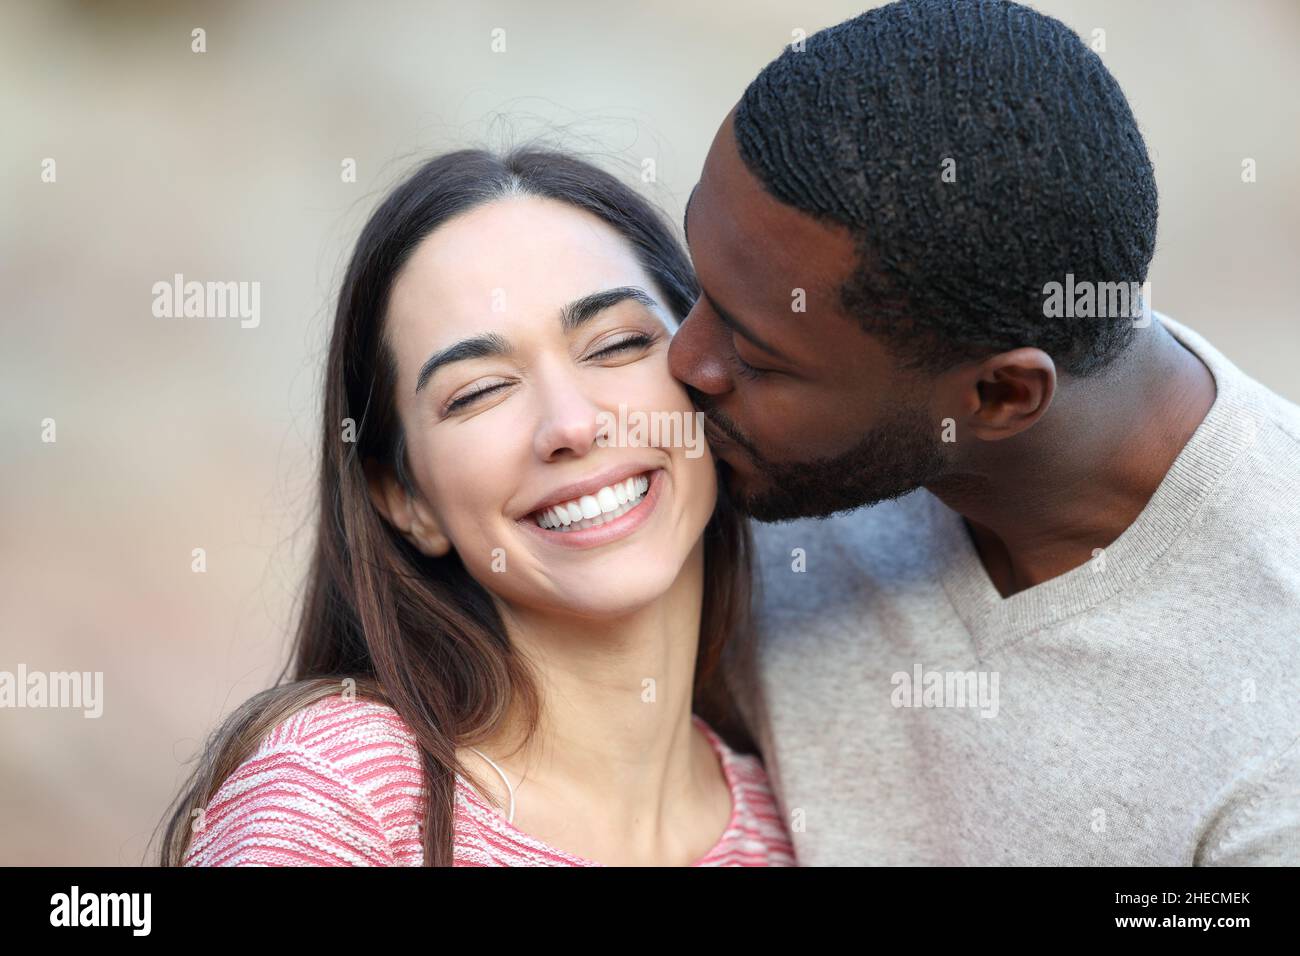 Uomo felice con pelle nera baciare sulla guancia una donna di bellezza all'aperto Foto Stock